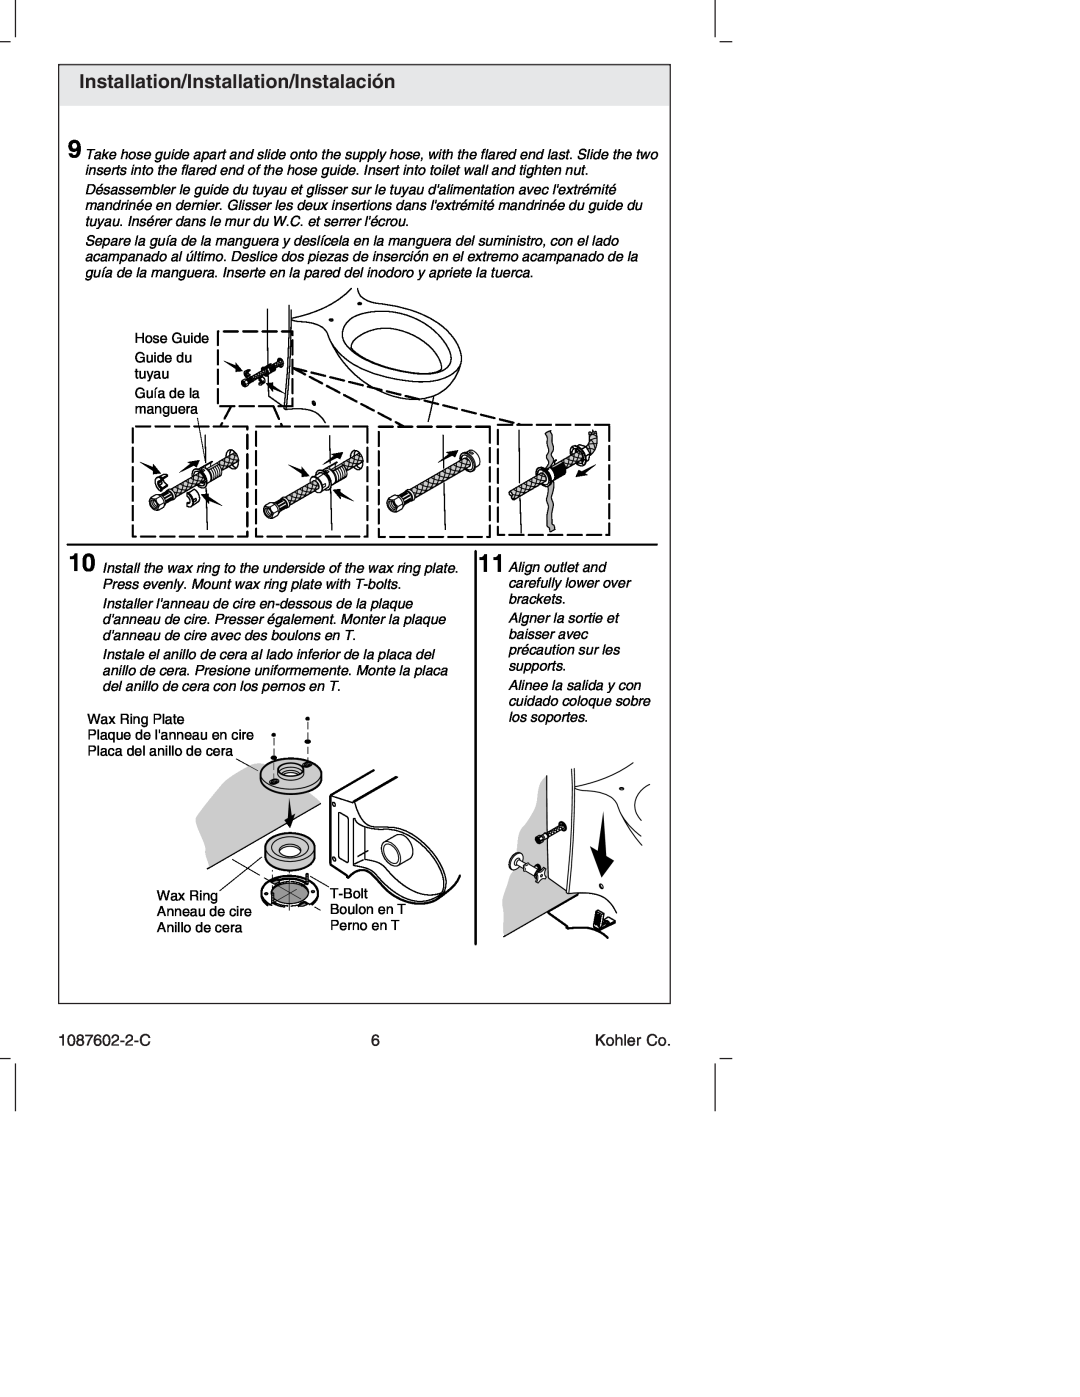 Kohler K-3564 manual Hose Guide Guide du tuyau Guía de la manguera, Wax Ring Plate Plaque de lanneau en cire, 1087602-2-C 